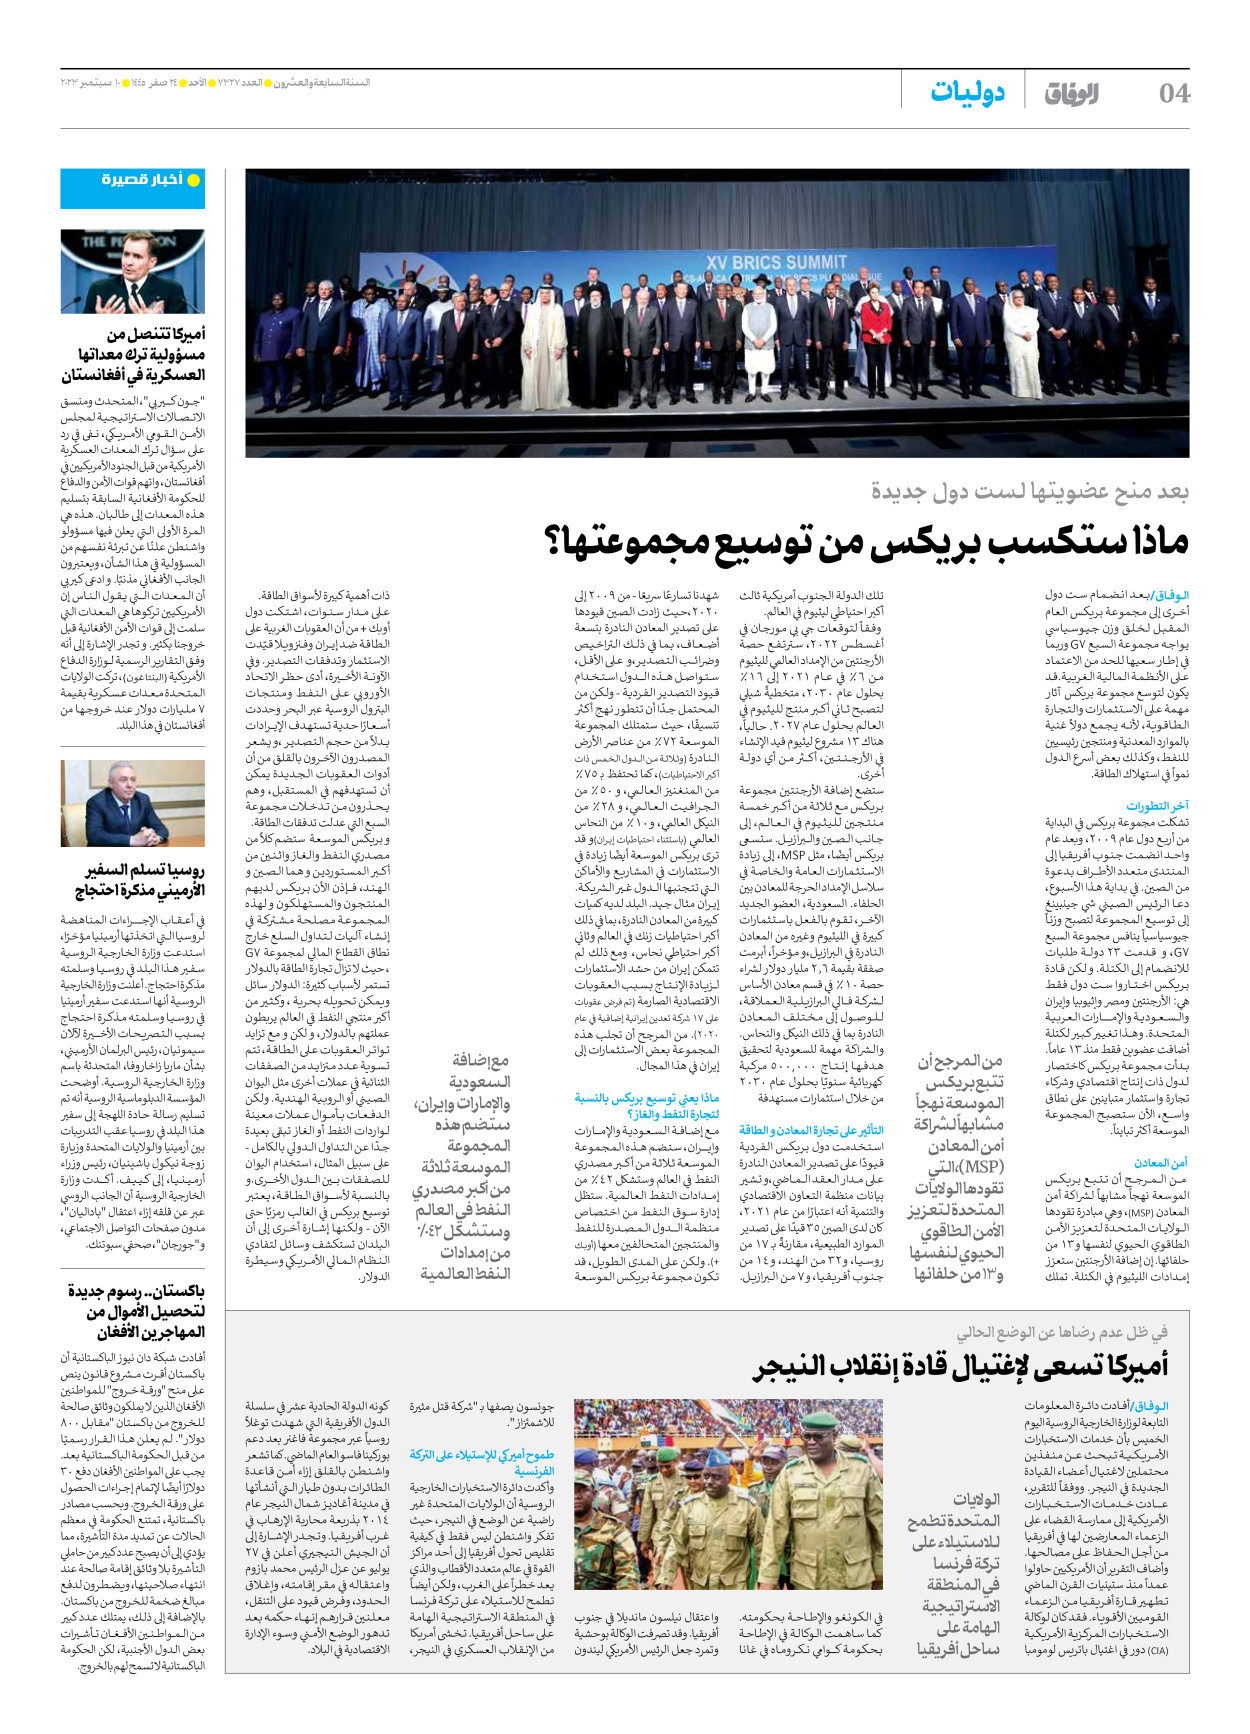 صحیفة ایران الدولیة الوفاق - العدد سبعة آلاف وثلاثمائة وسبعة وعشرون - ١٠ سبتمبر ٢٠٢٣ - الصفحة ٤